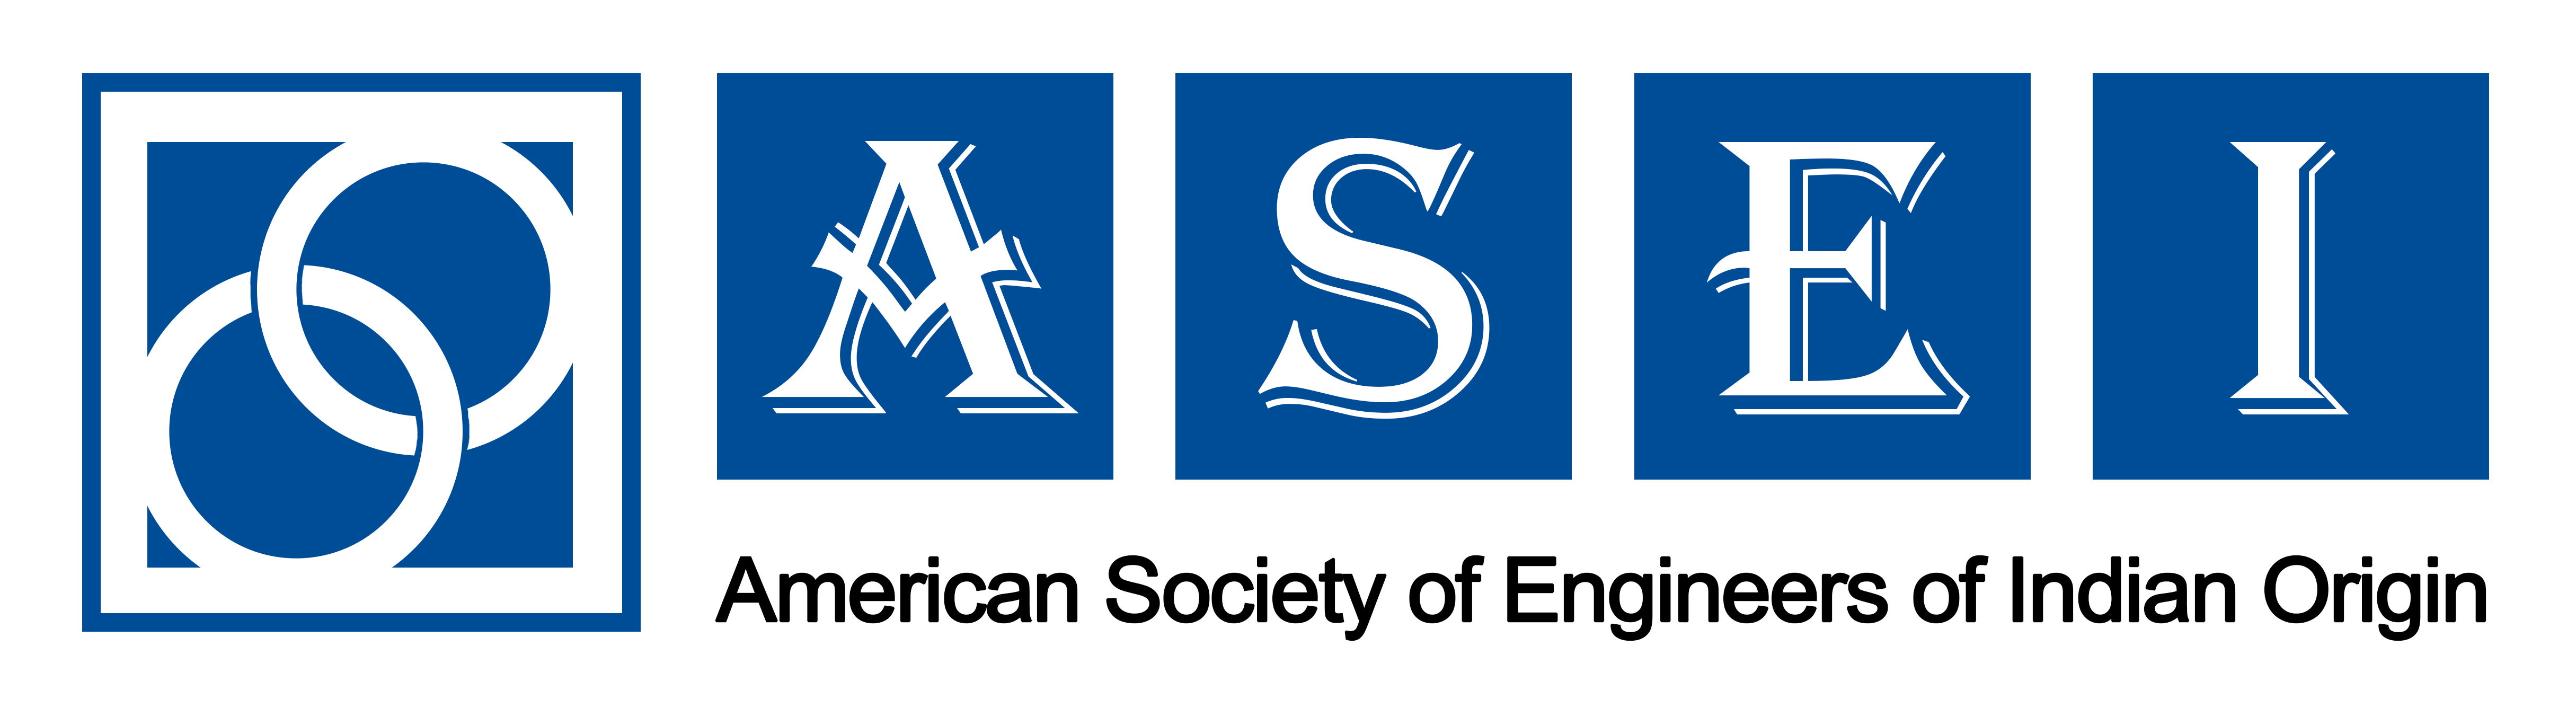 ASEI-logo2